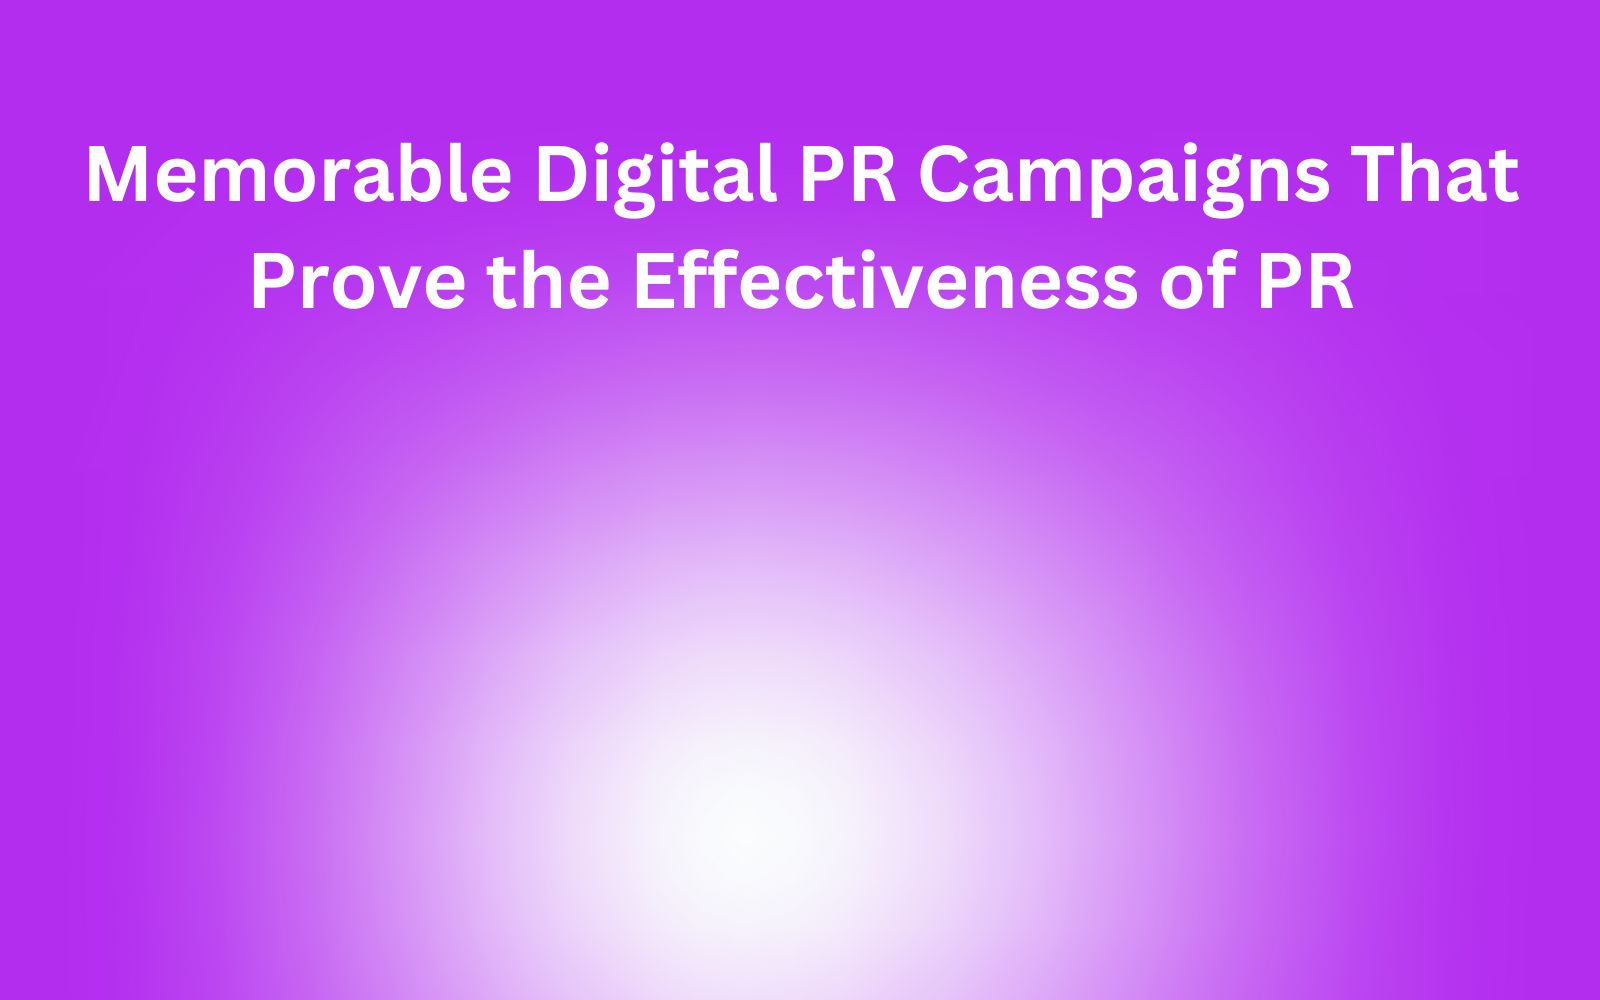 Digital PR campaigns